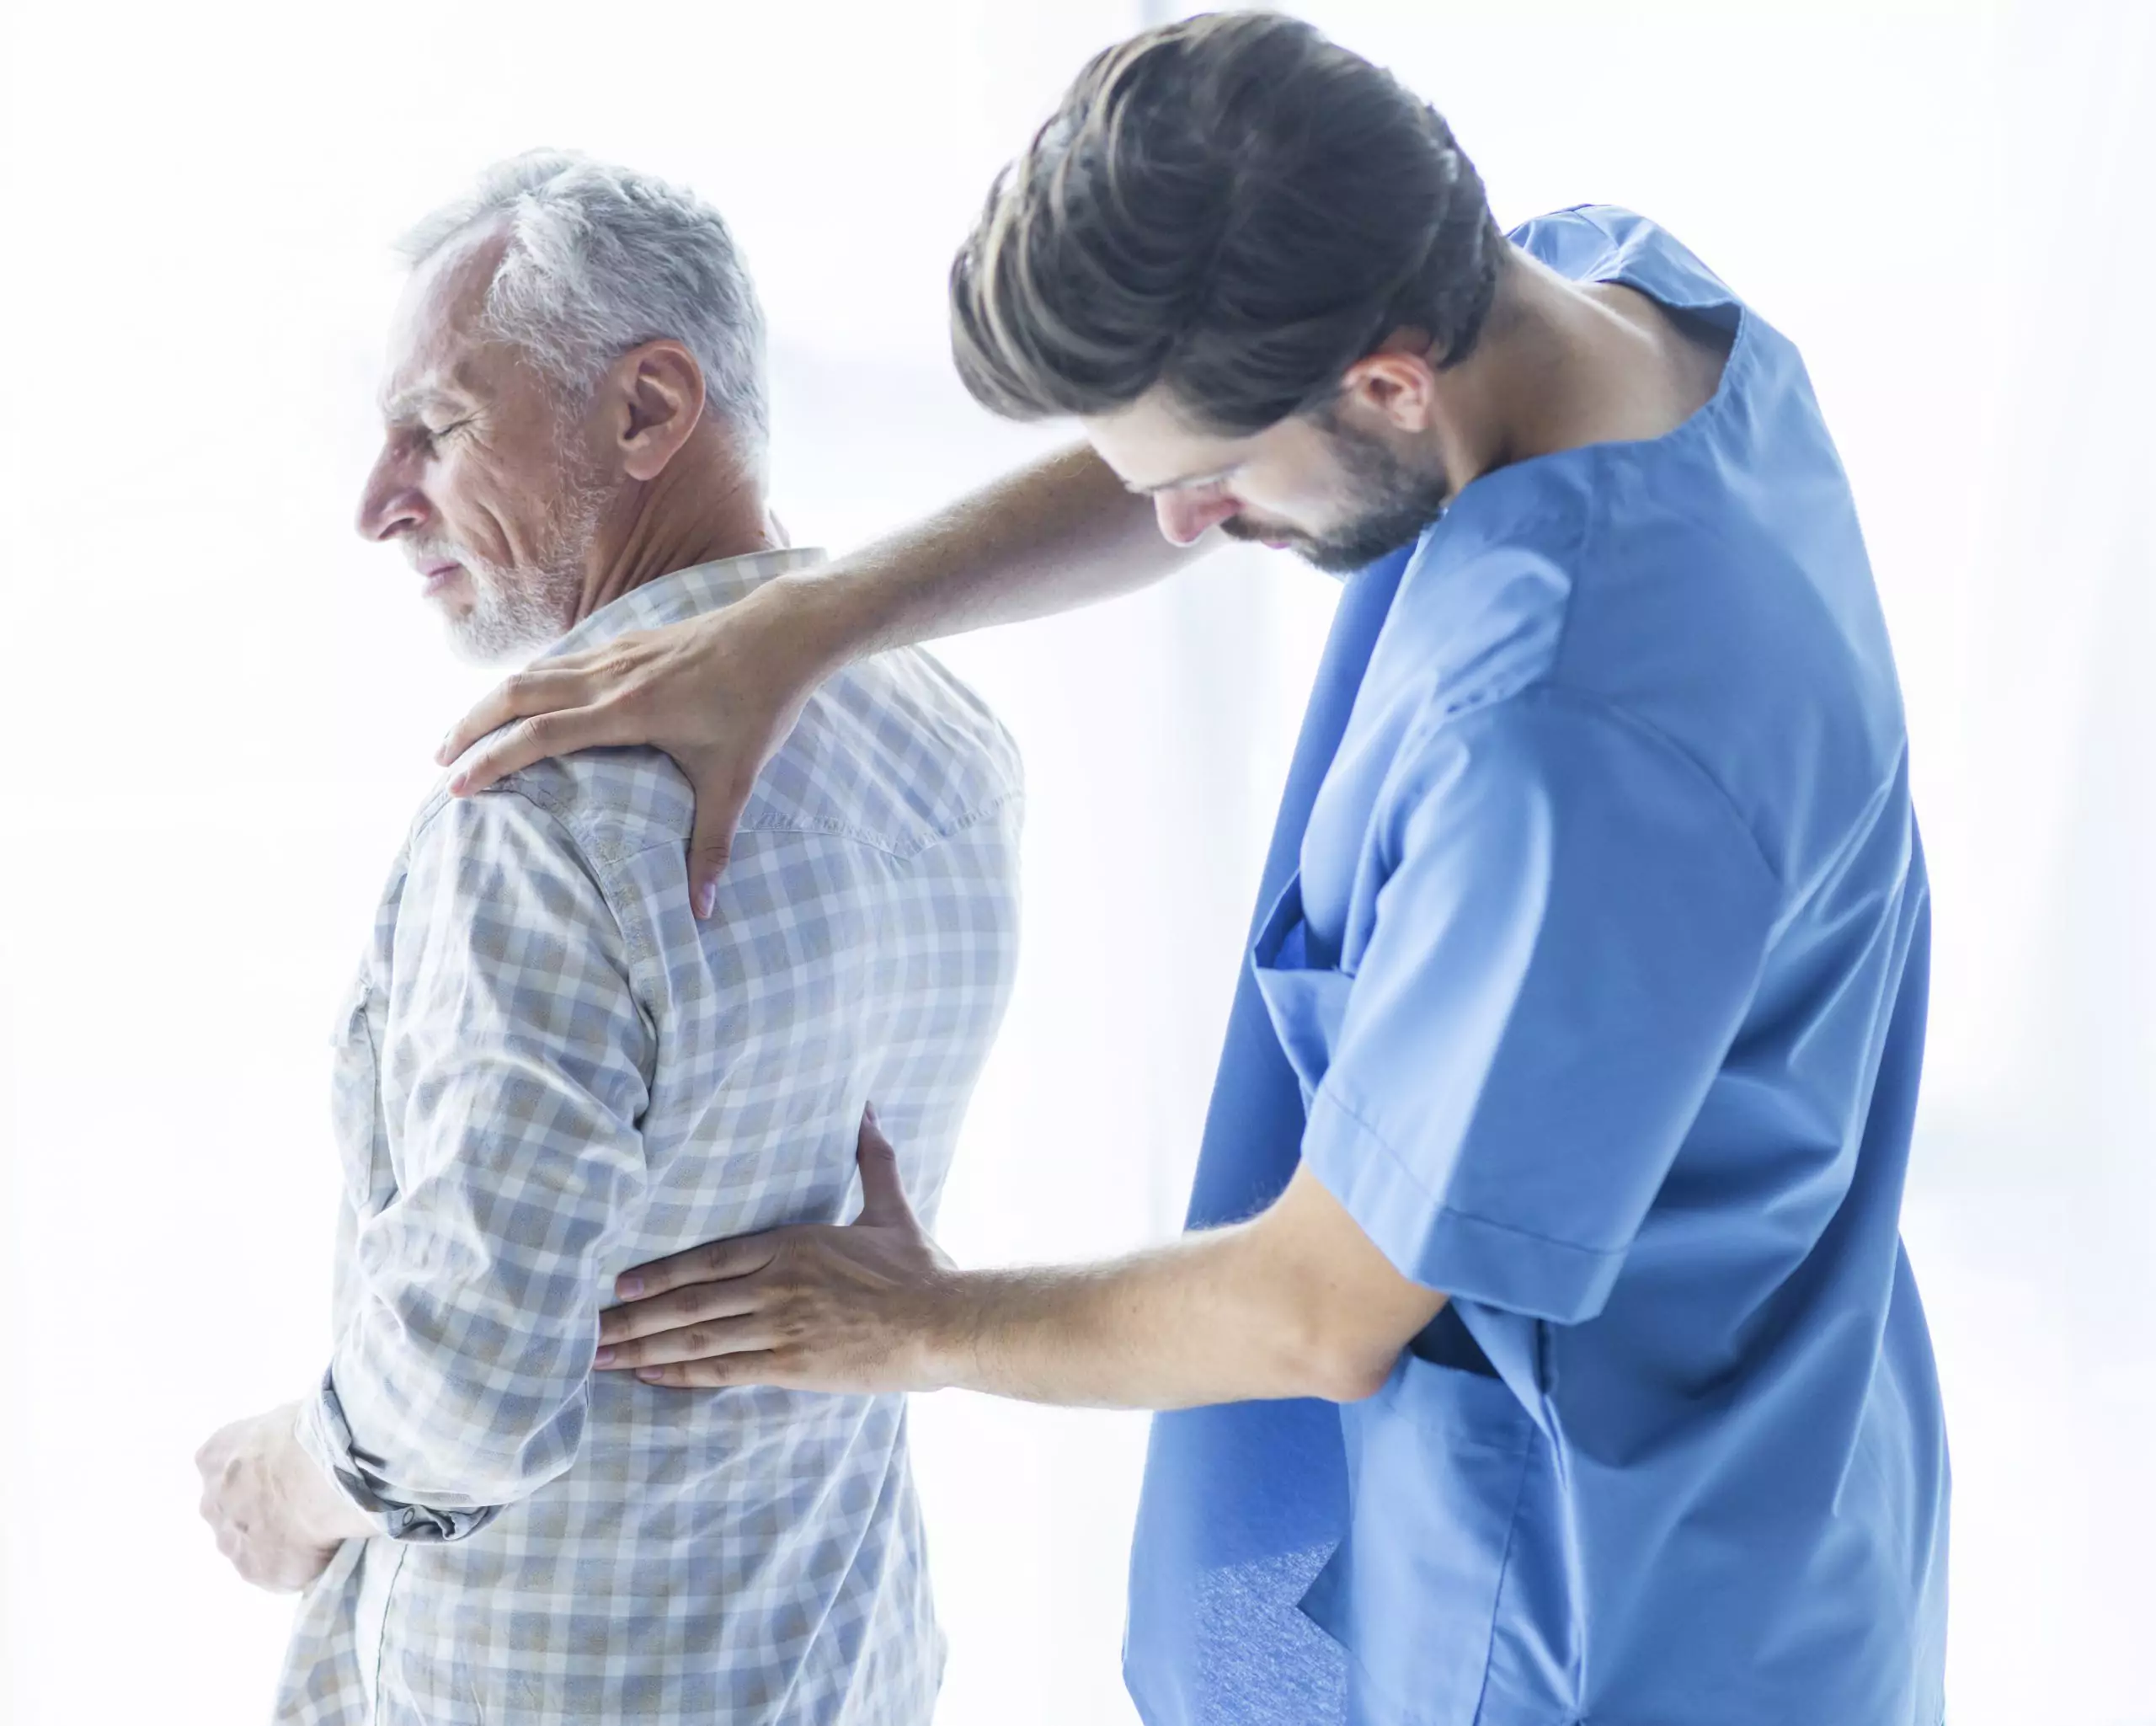 man experiencing back pain symptom of stage 4 kidney disease